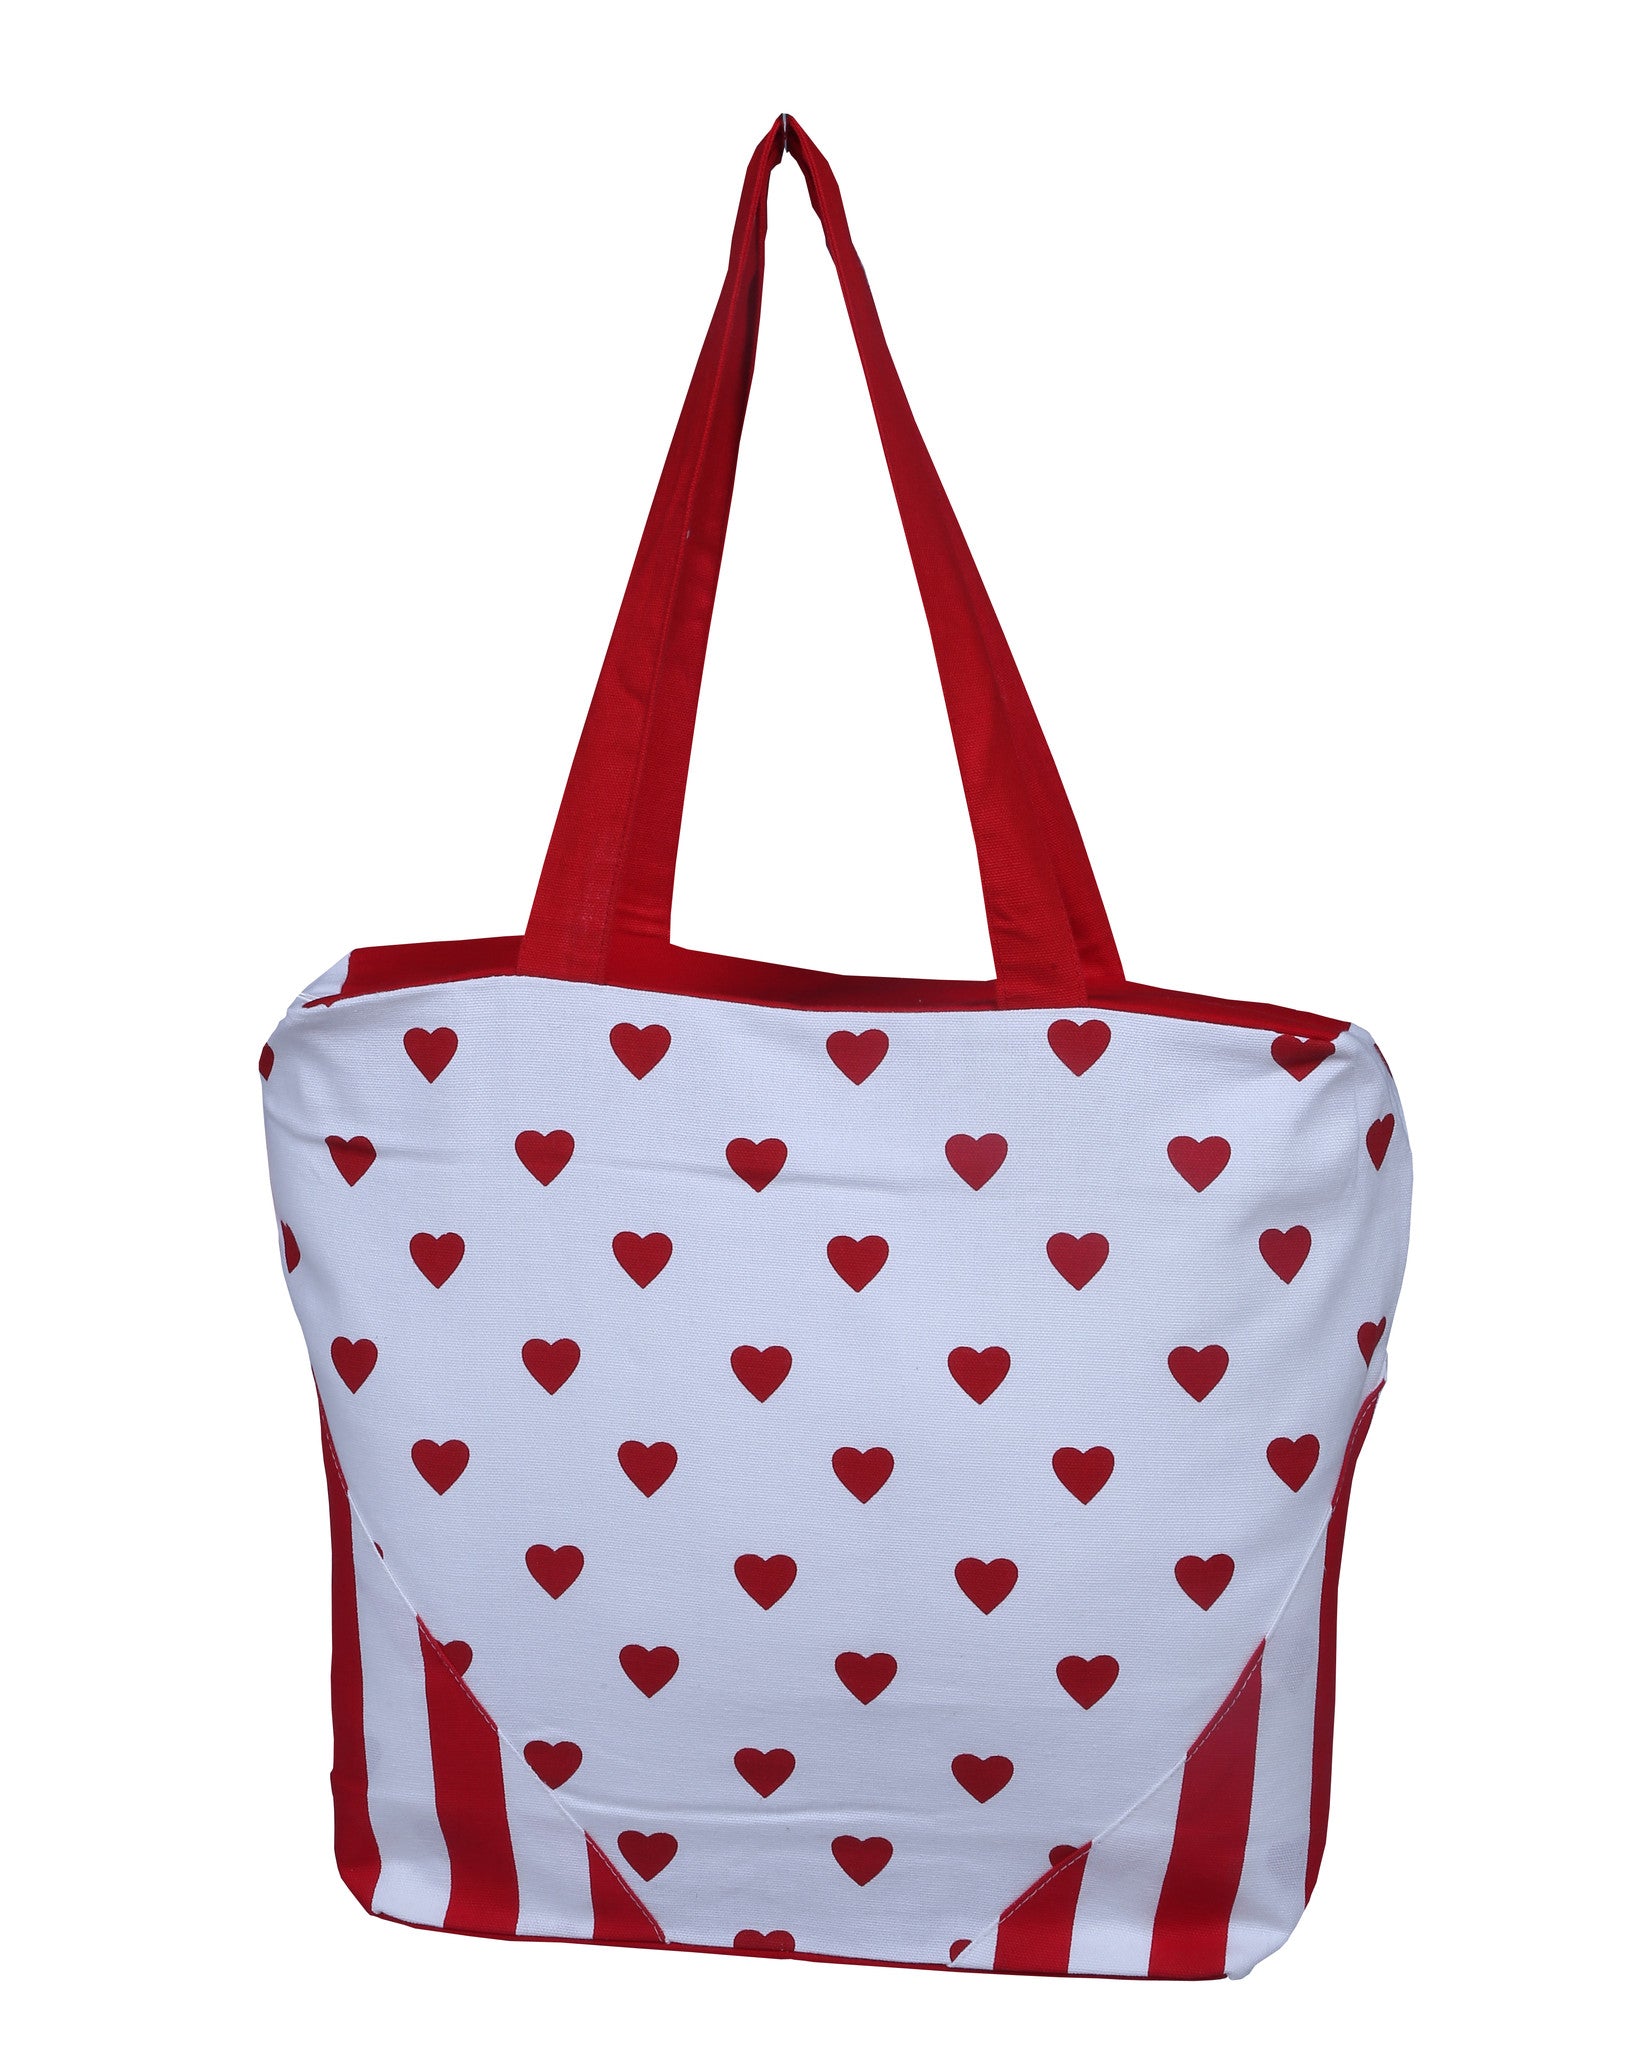 Handbag - Large Hearts Red